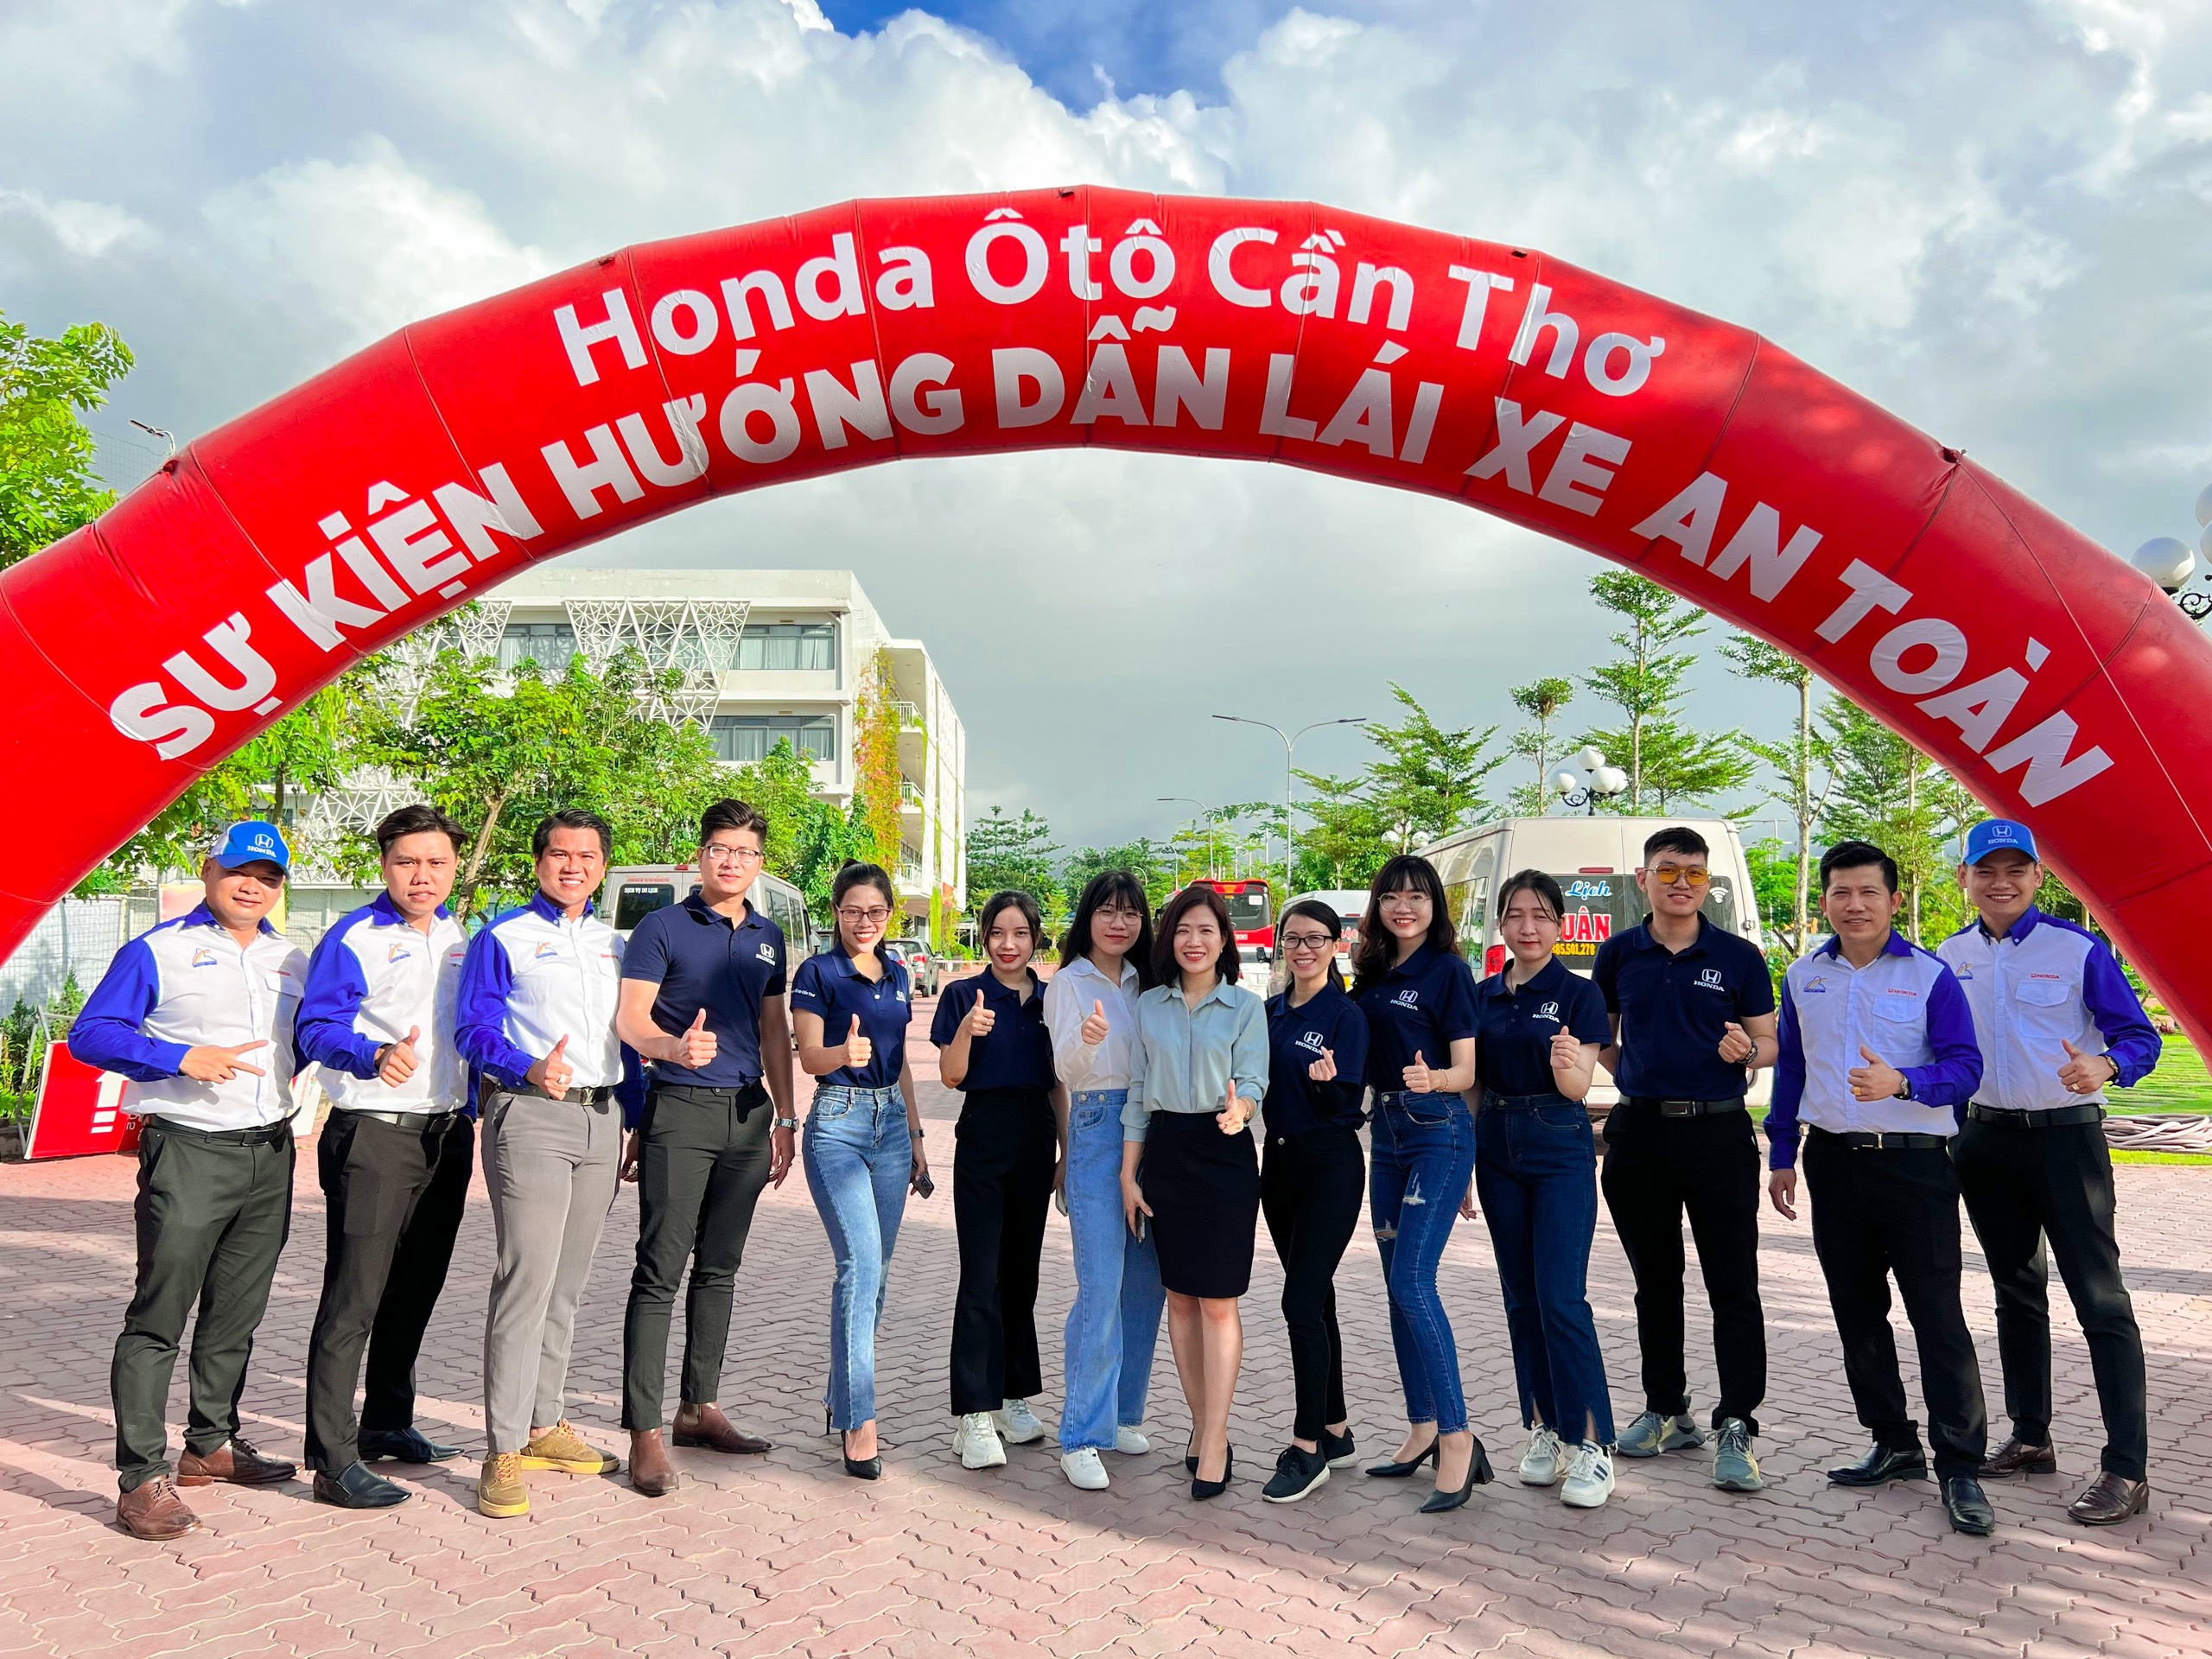 Hơn 50 học viên tham gia chương trình hướng dẫn lái xe an toàn cùng Honda Ôtô Cần Thơ